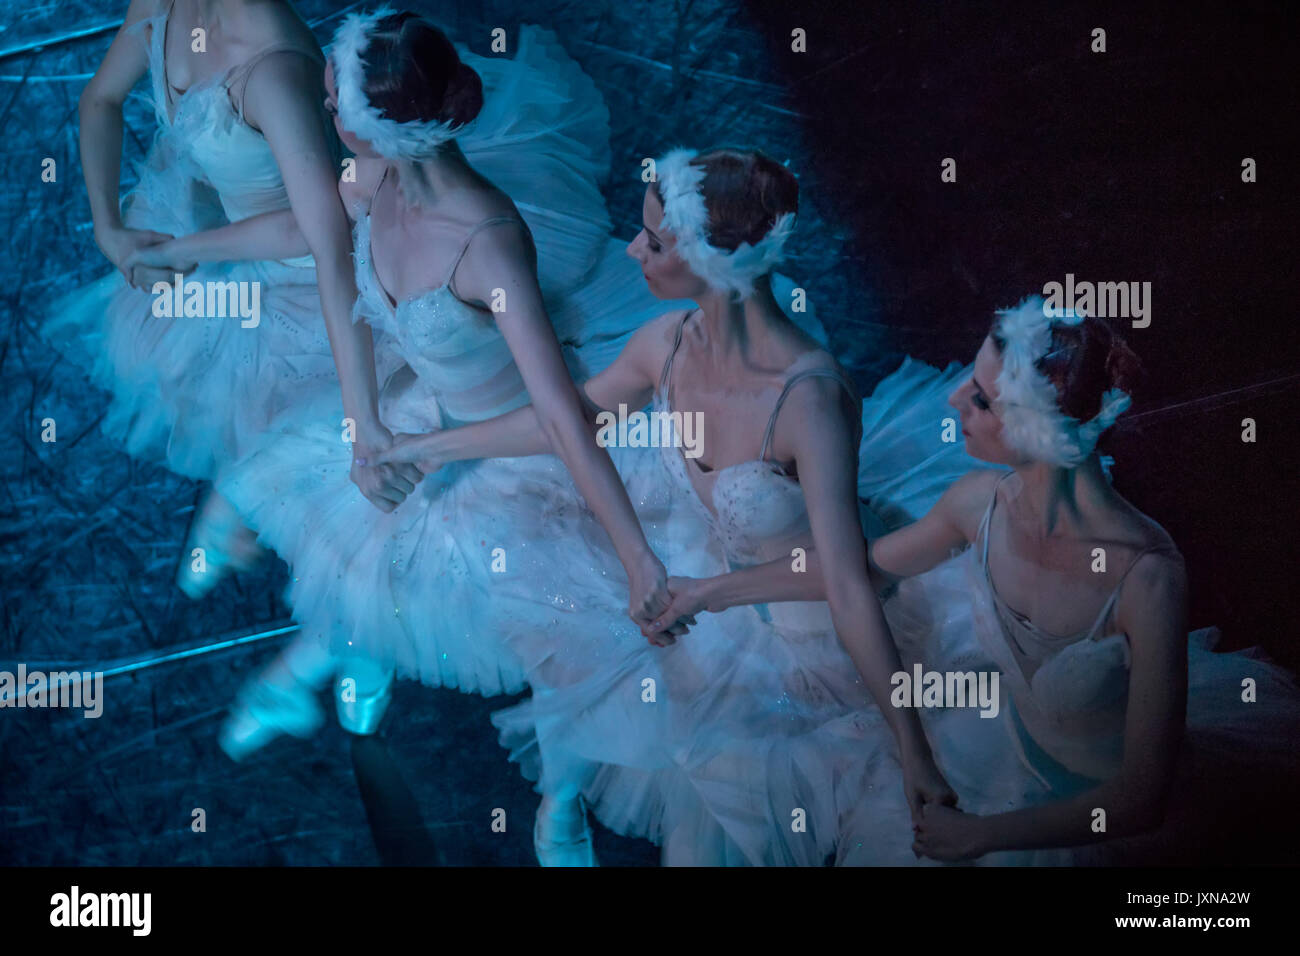 Les spectacles de danse de ballet la danse des petits cygnes pendant le ballet 'lac' wan lors de la scène de théâtre à Moscou, Russie Banque D'Images